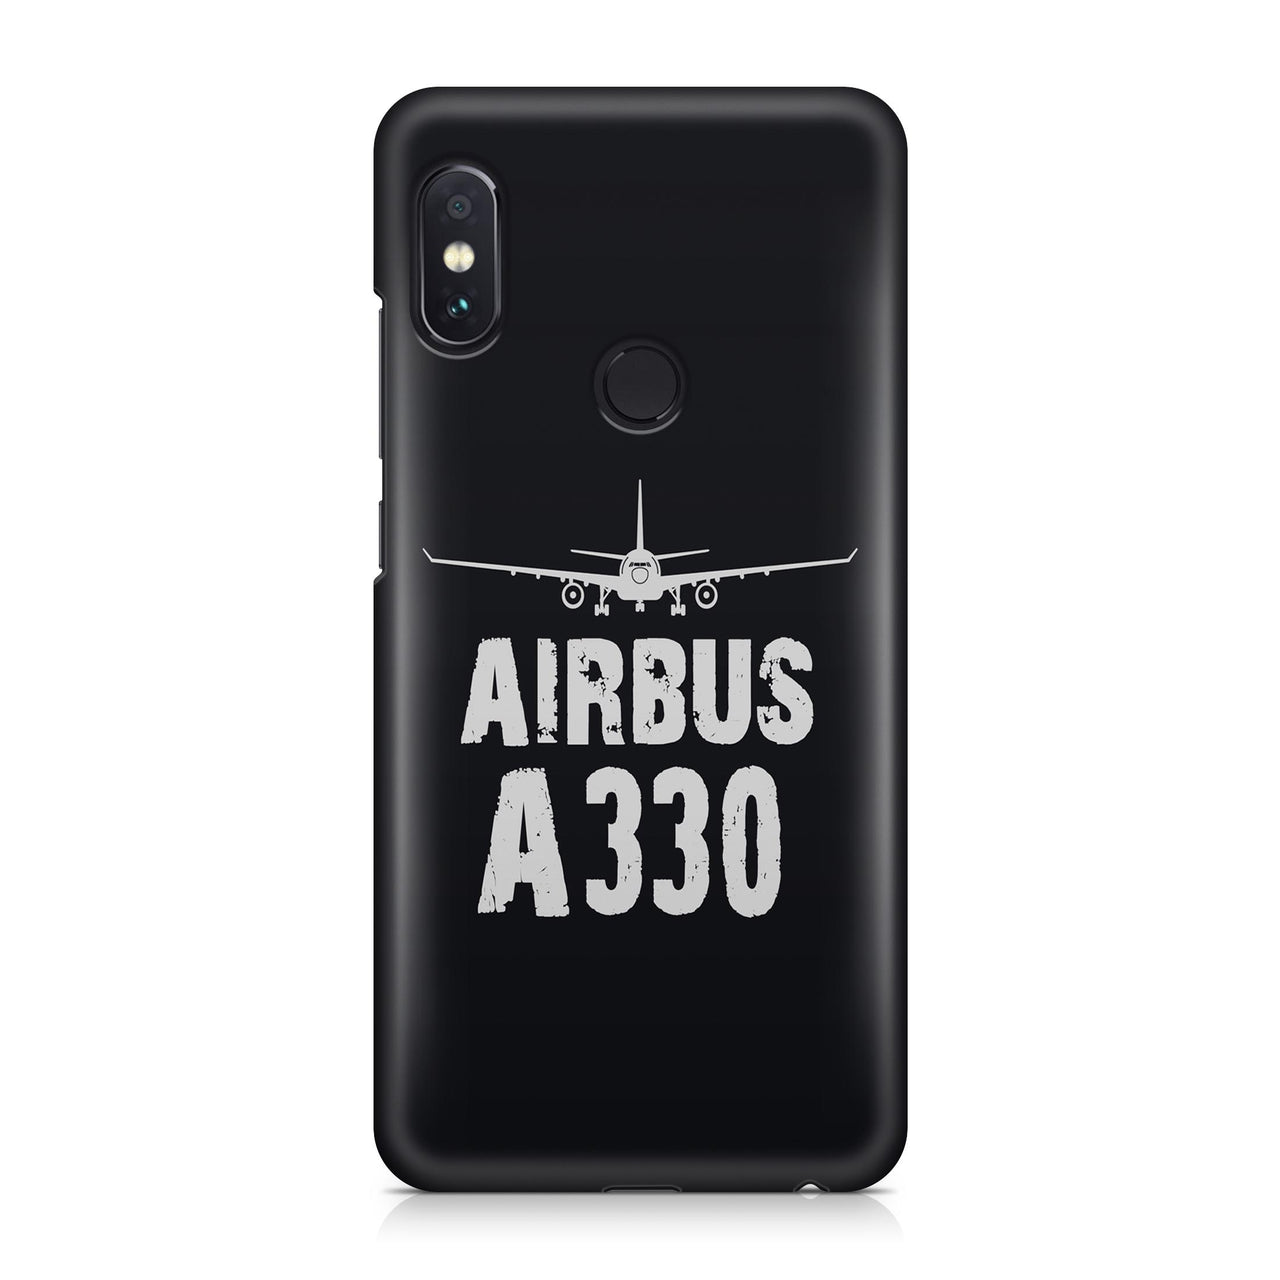 Airbus A330 Plane & Designed Xiaomi Cases